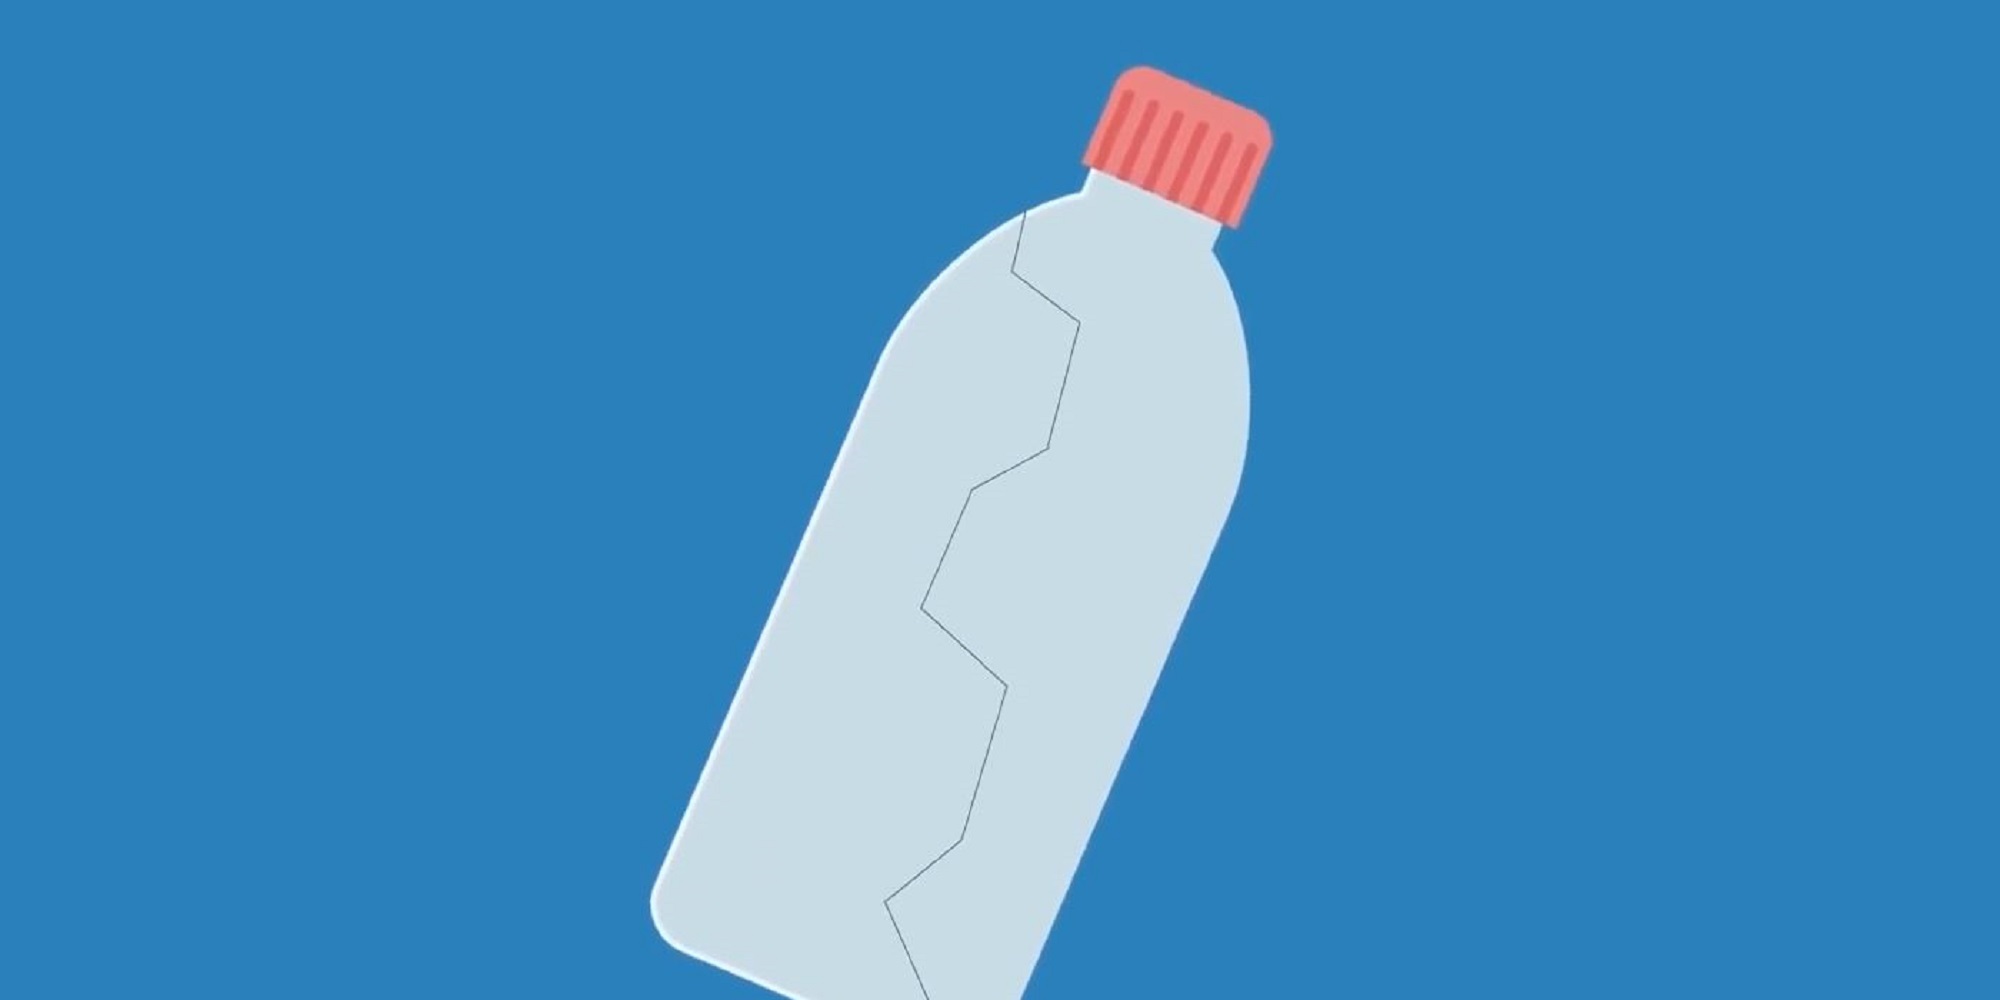 Plastflaske med raud kork på blå bakgrunn. Grafikk.